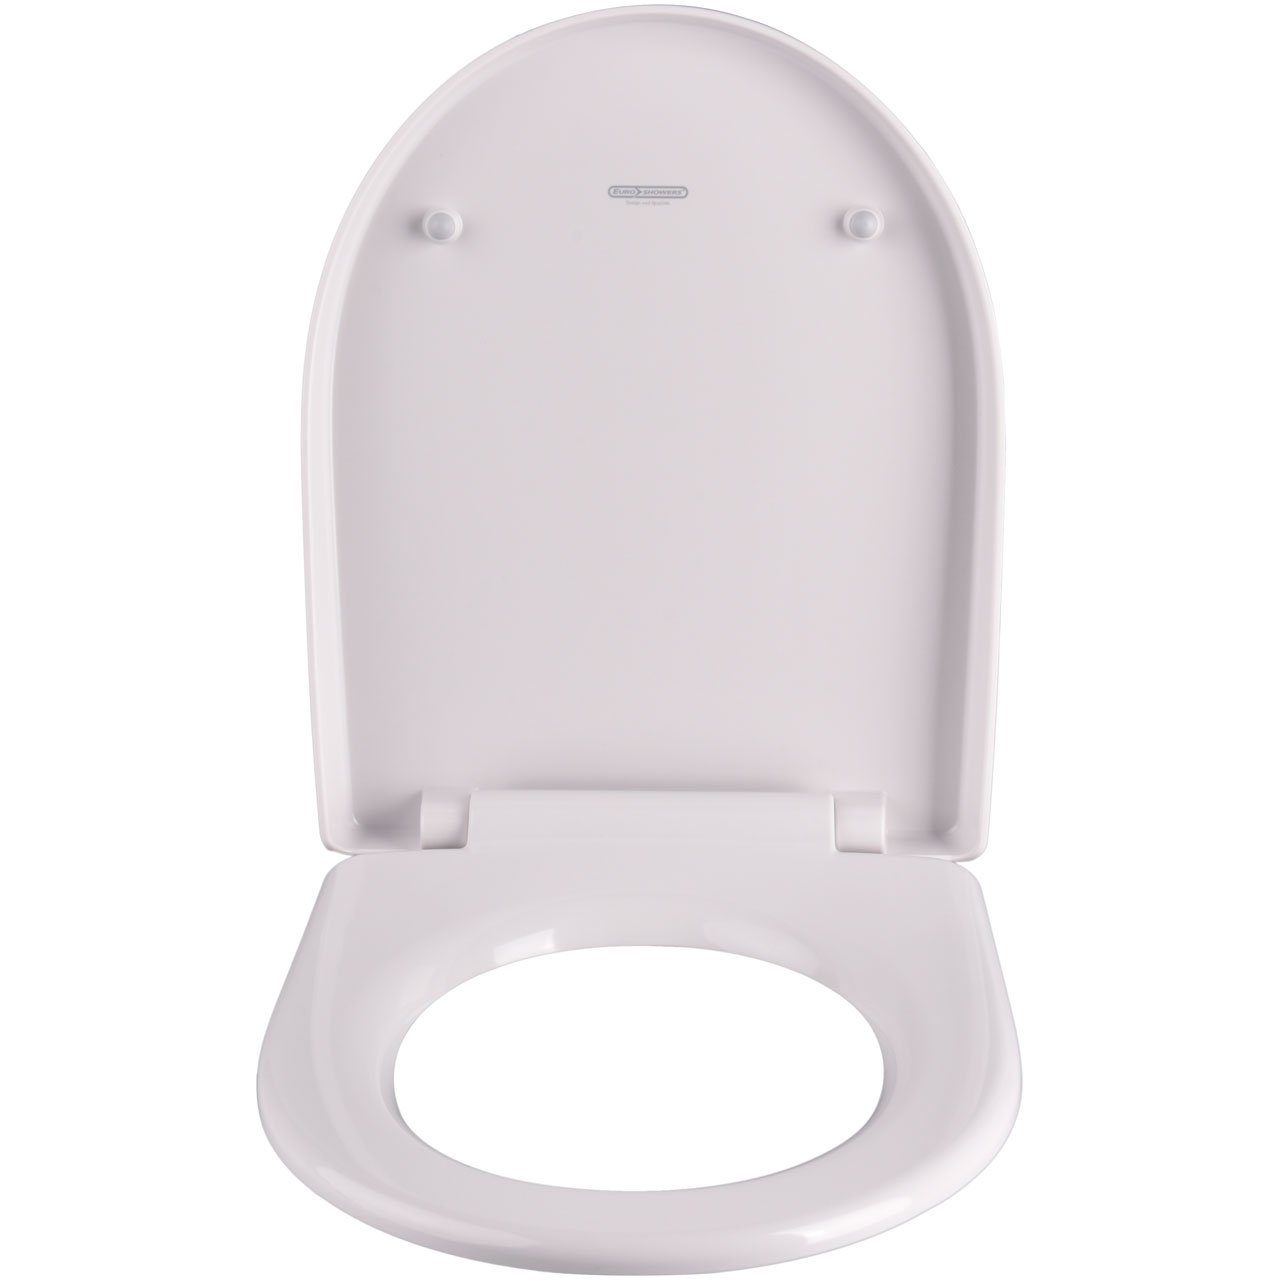 Euroshowers GmbH WC-Sitz WC-Sitz Premium Toilettendeckel antibakteriell  weiß. Klodeckel mit Quick-Release-Funktion und Softclose Absenkautomatik.  Passend für z.B. Connect und ähnliche Formen